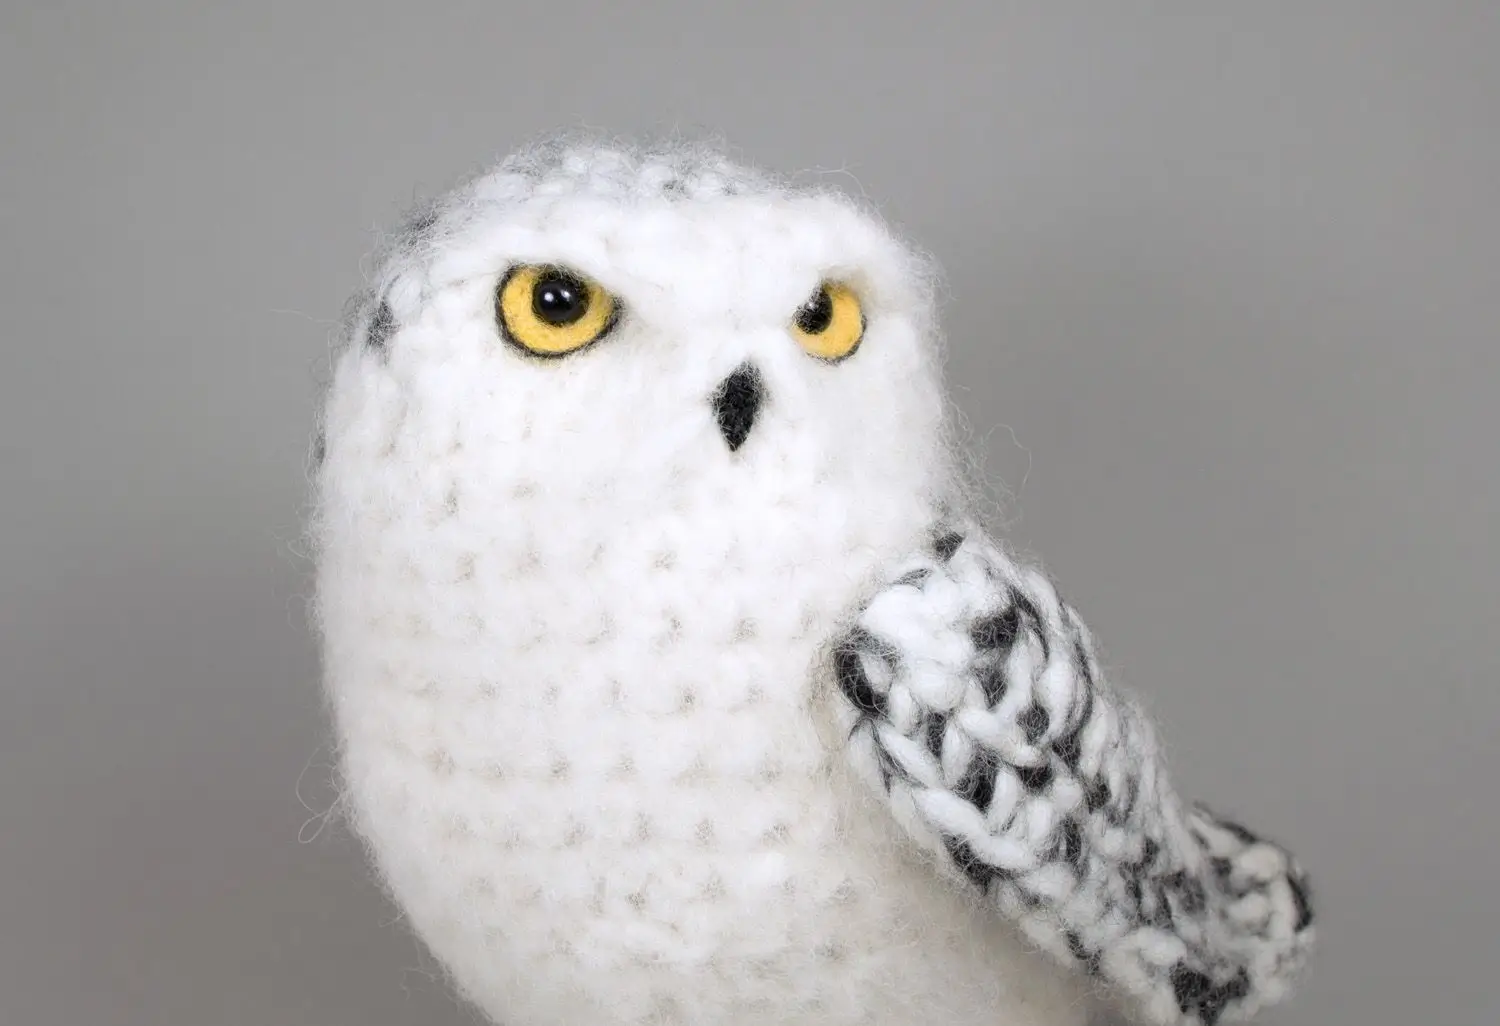 Snowy owl crochet pattern free